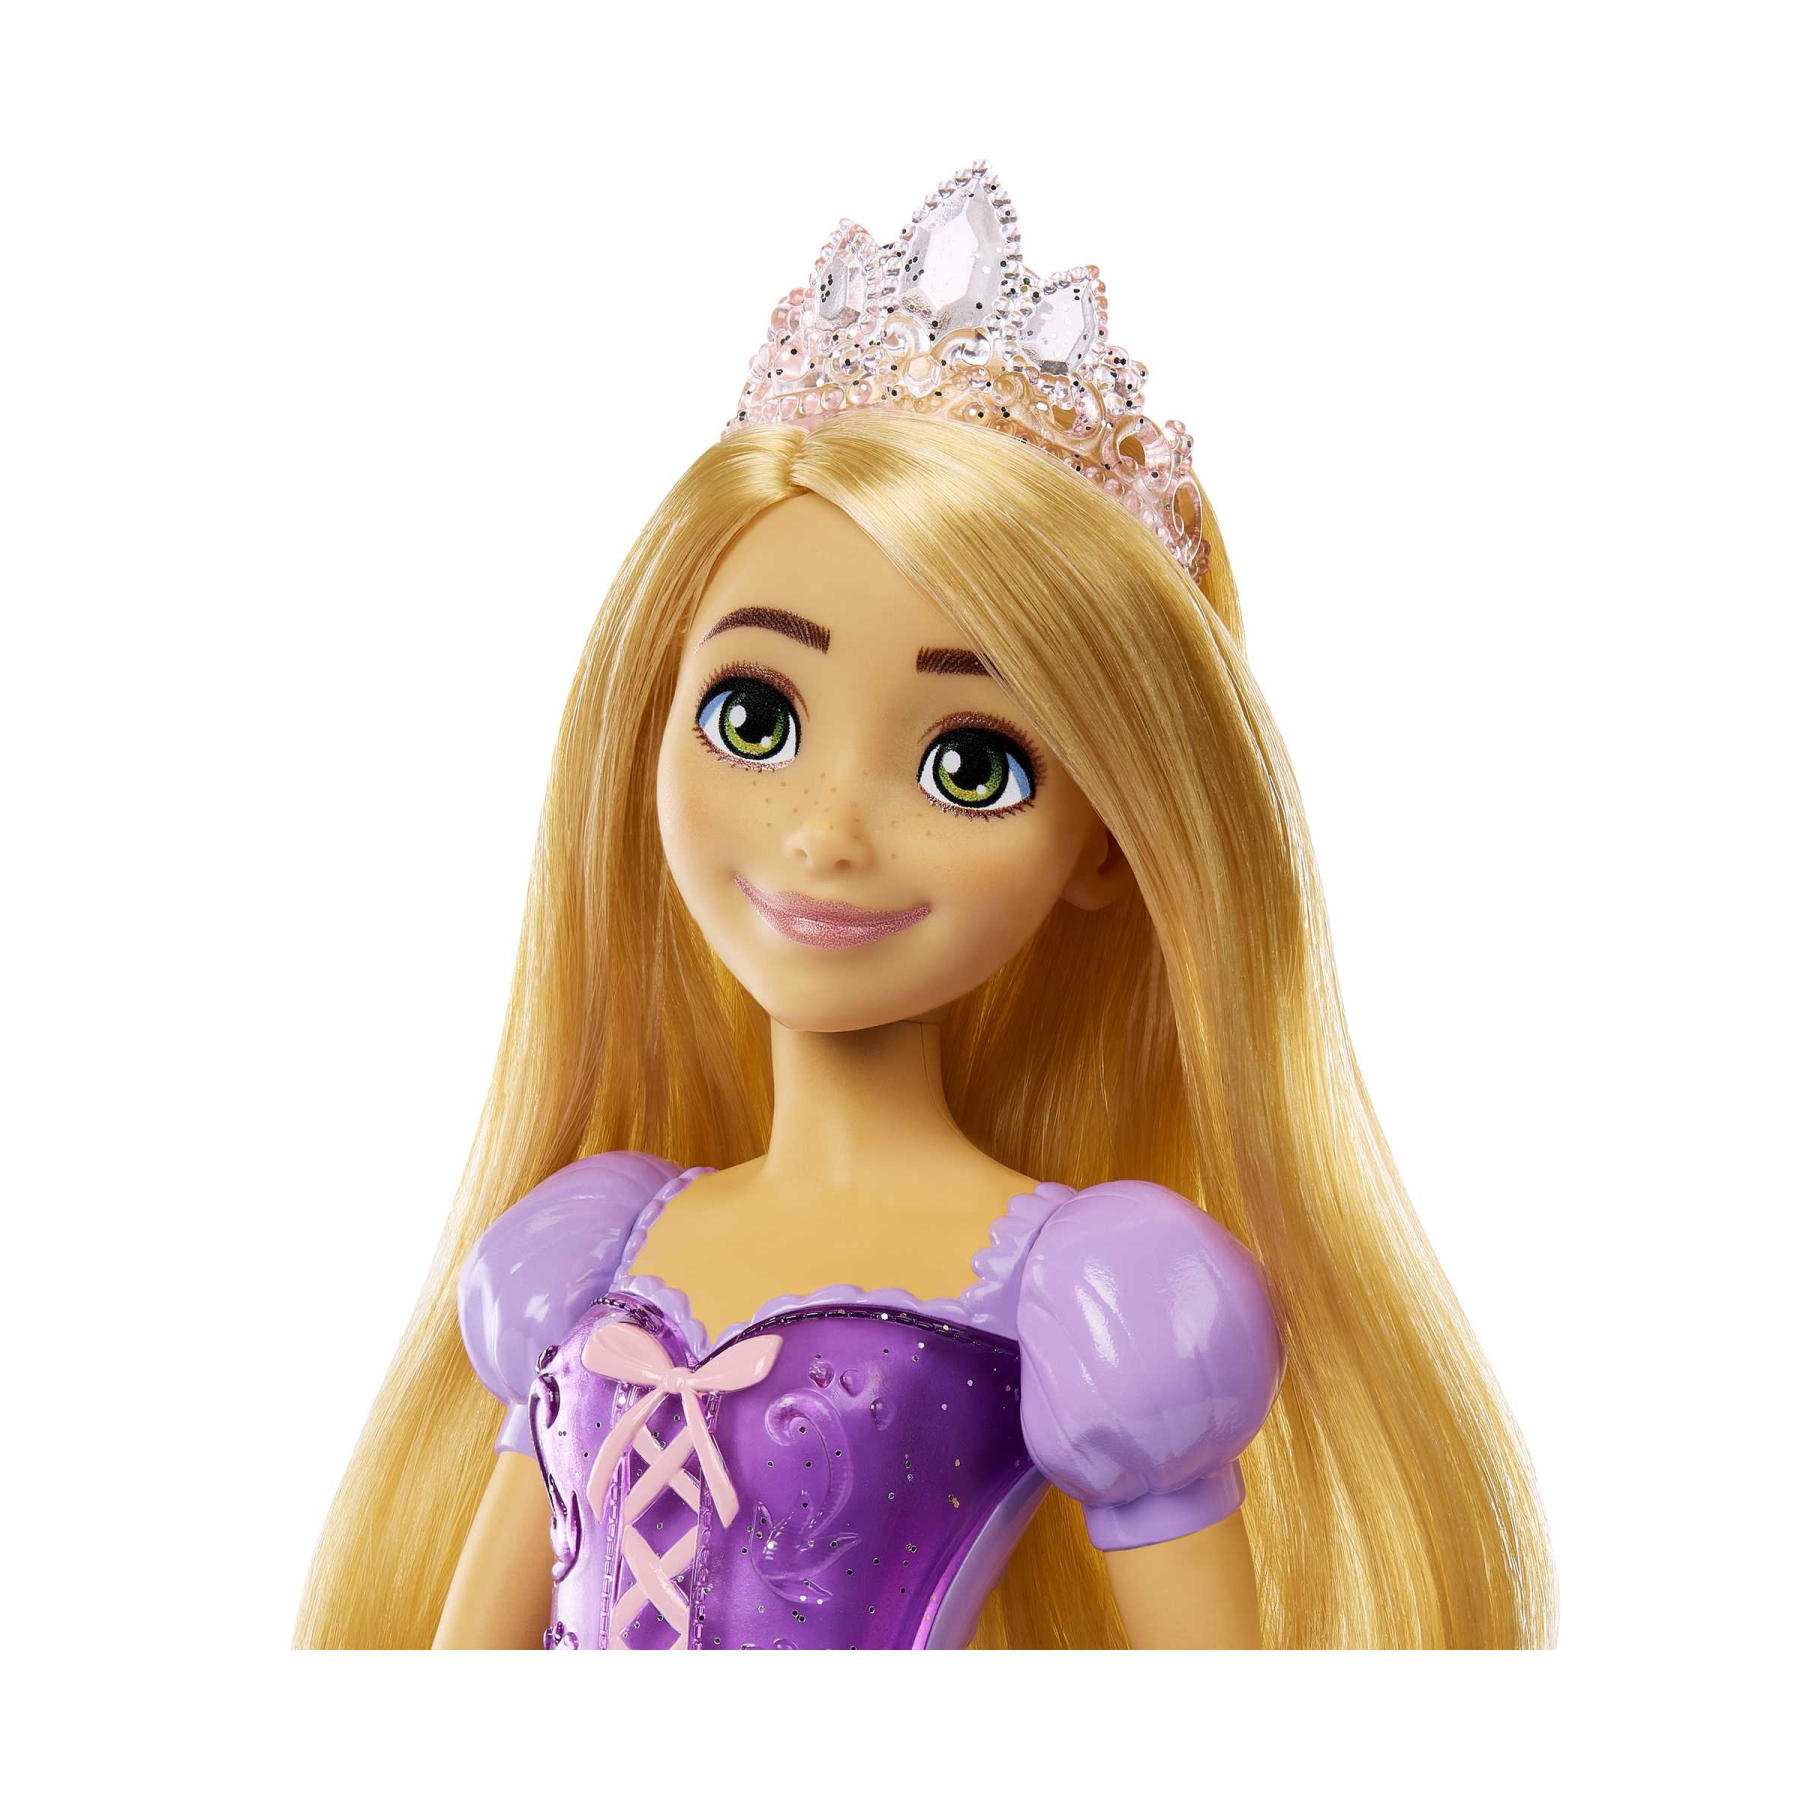 Disney princess - rapunzel bambola snodata, vestita alla moda con capi e accessori scintillanti ispirati al film disney, giocattolo per bambini, 3+ anni, hlw03 - DISNEY PRINCESS